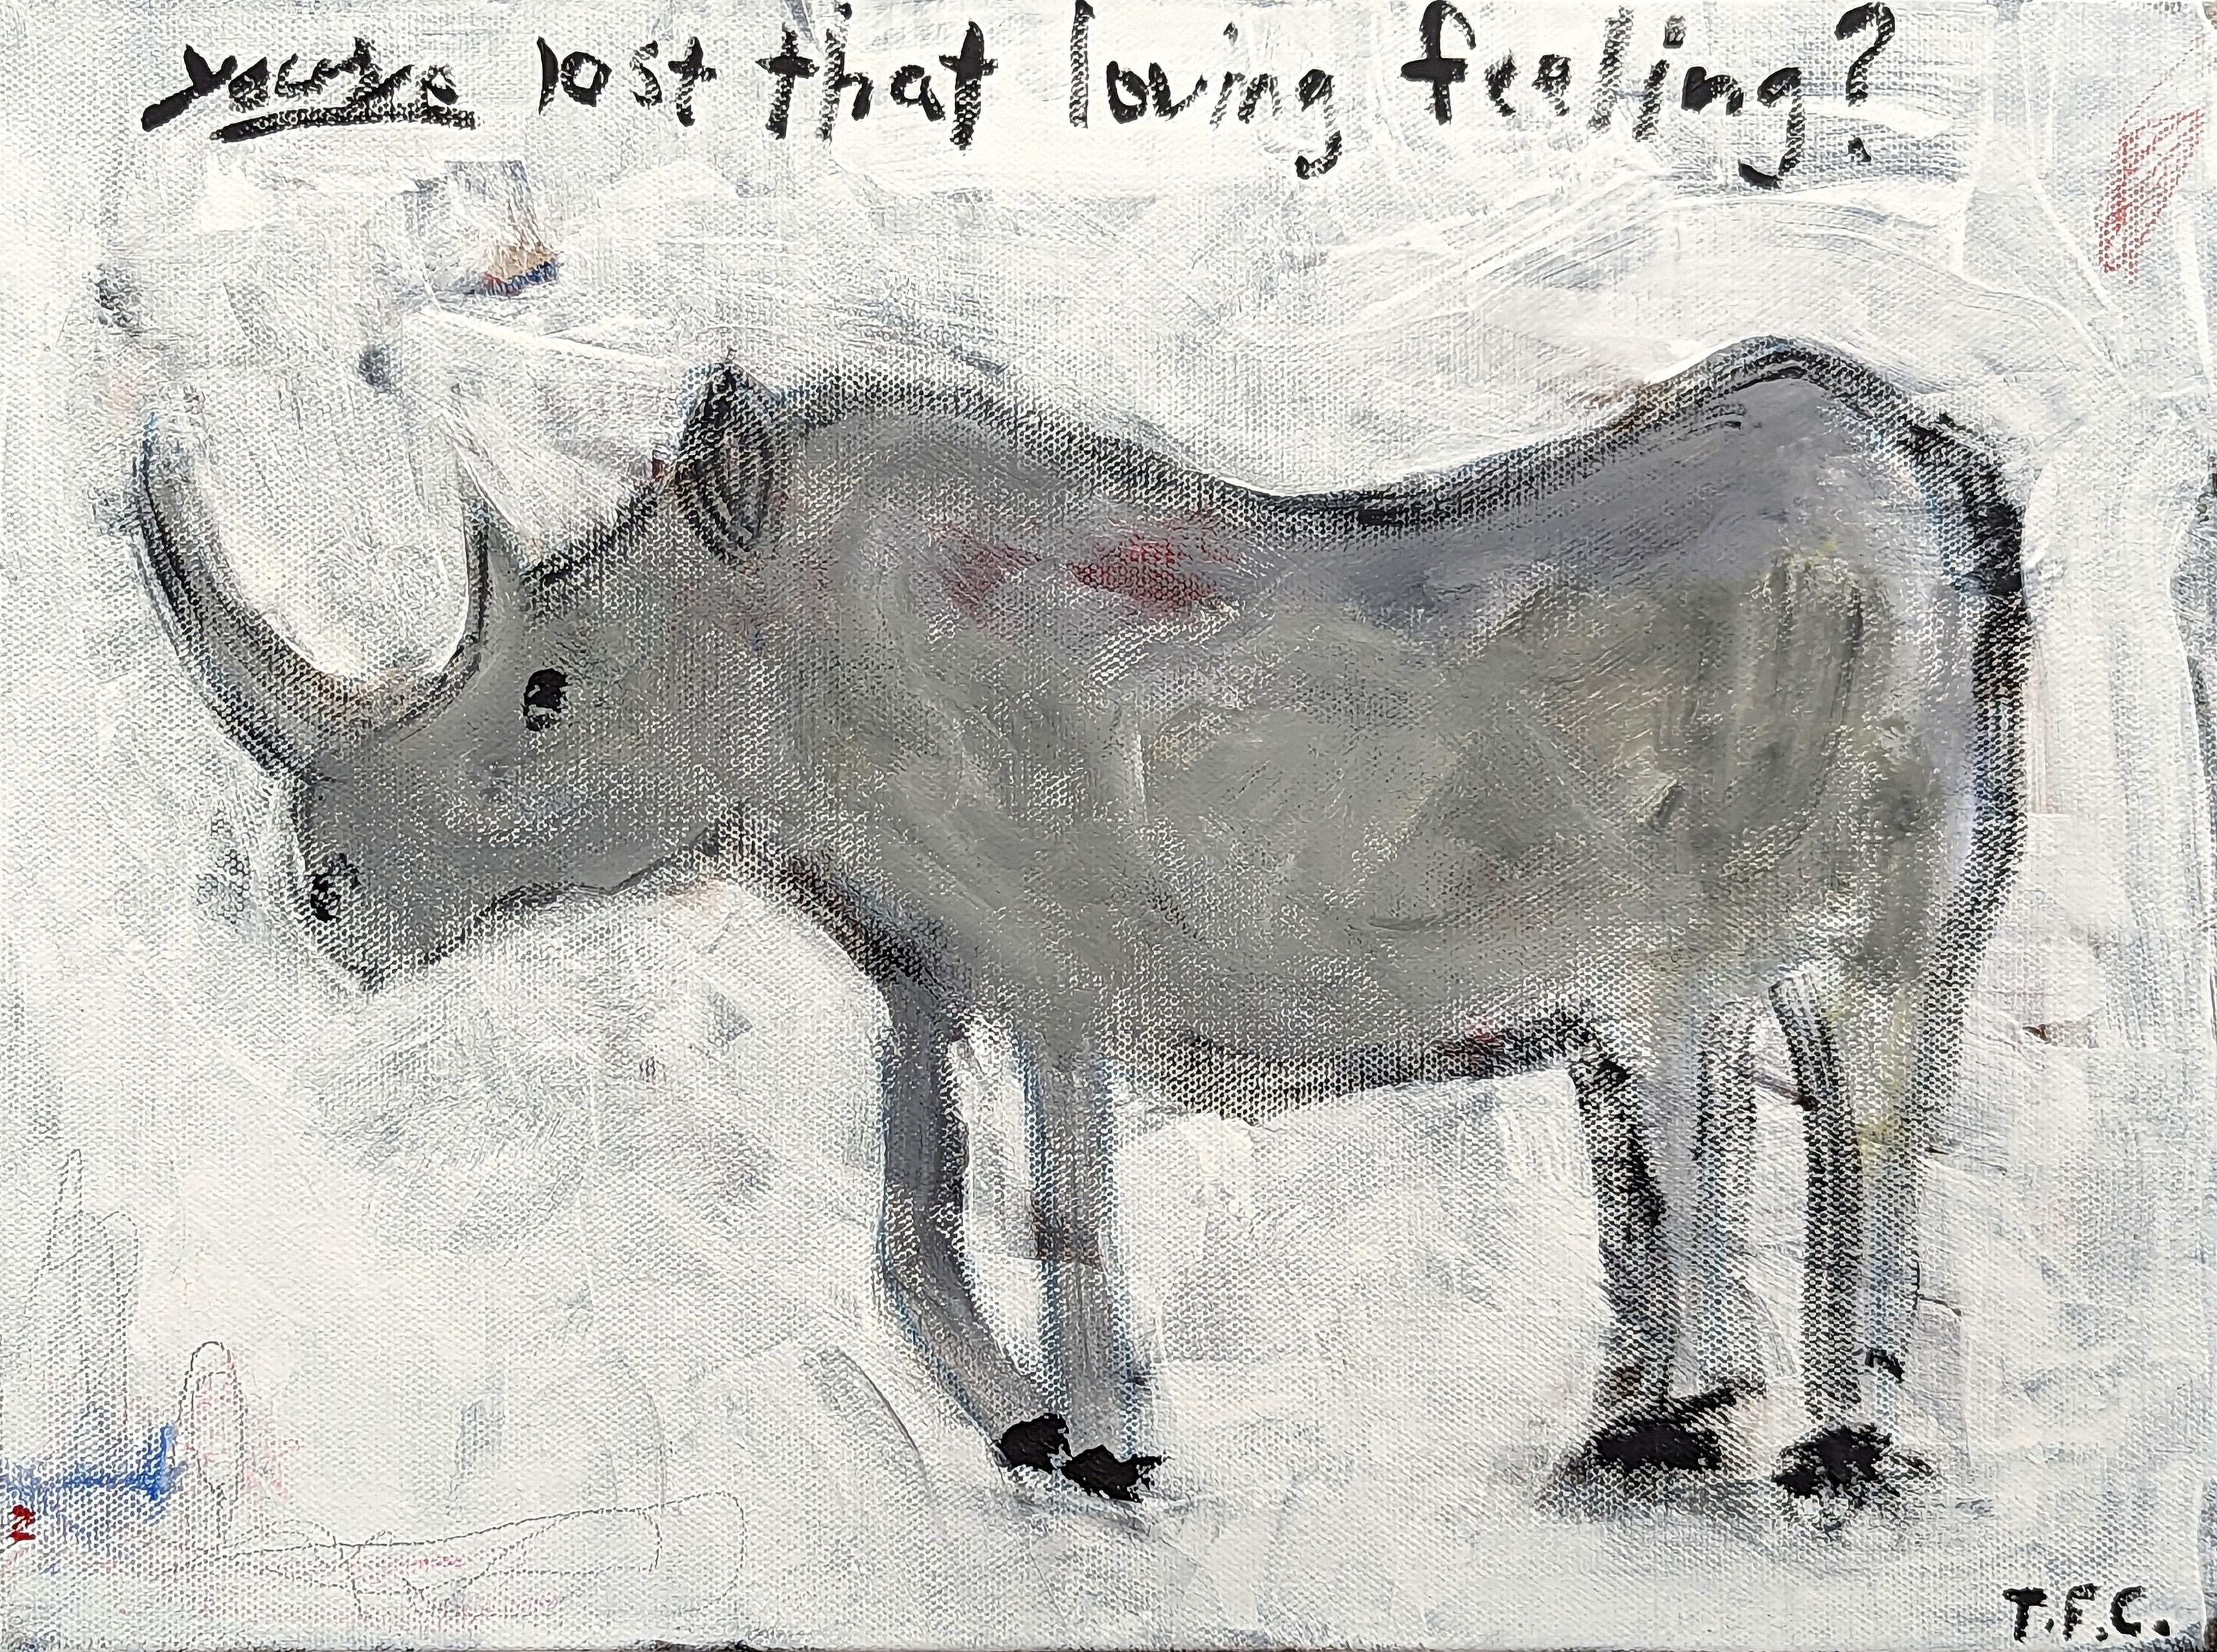 Tyler Casey Animal Painting – "Rhino" Zeitgenössische grau getönte abstrakte Pop Art Tier Malerei